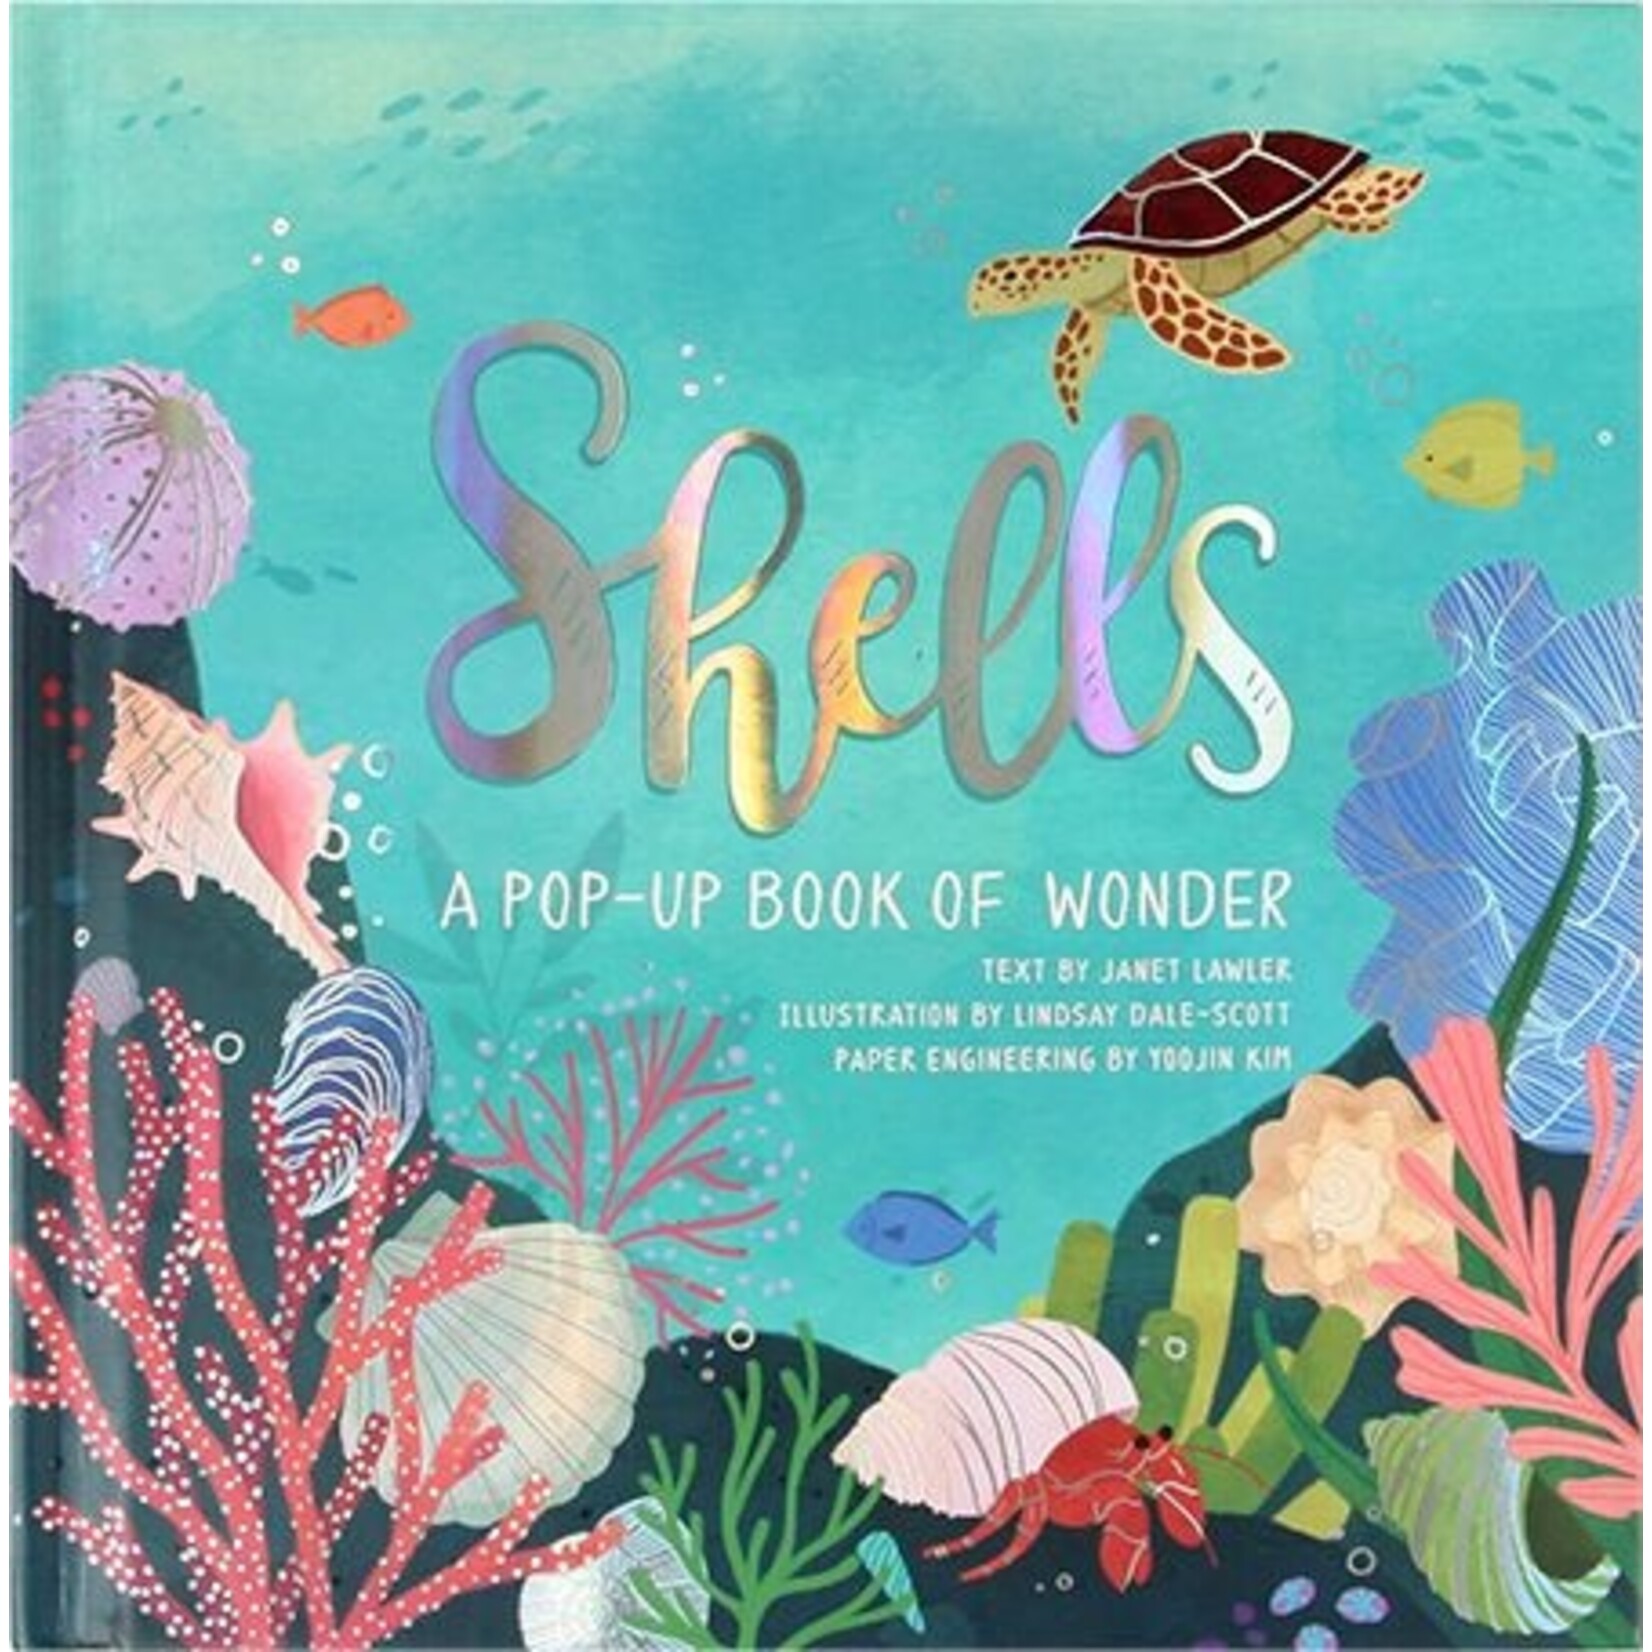 Shells: A Pop-up Book of Wonder